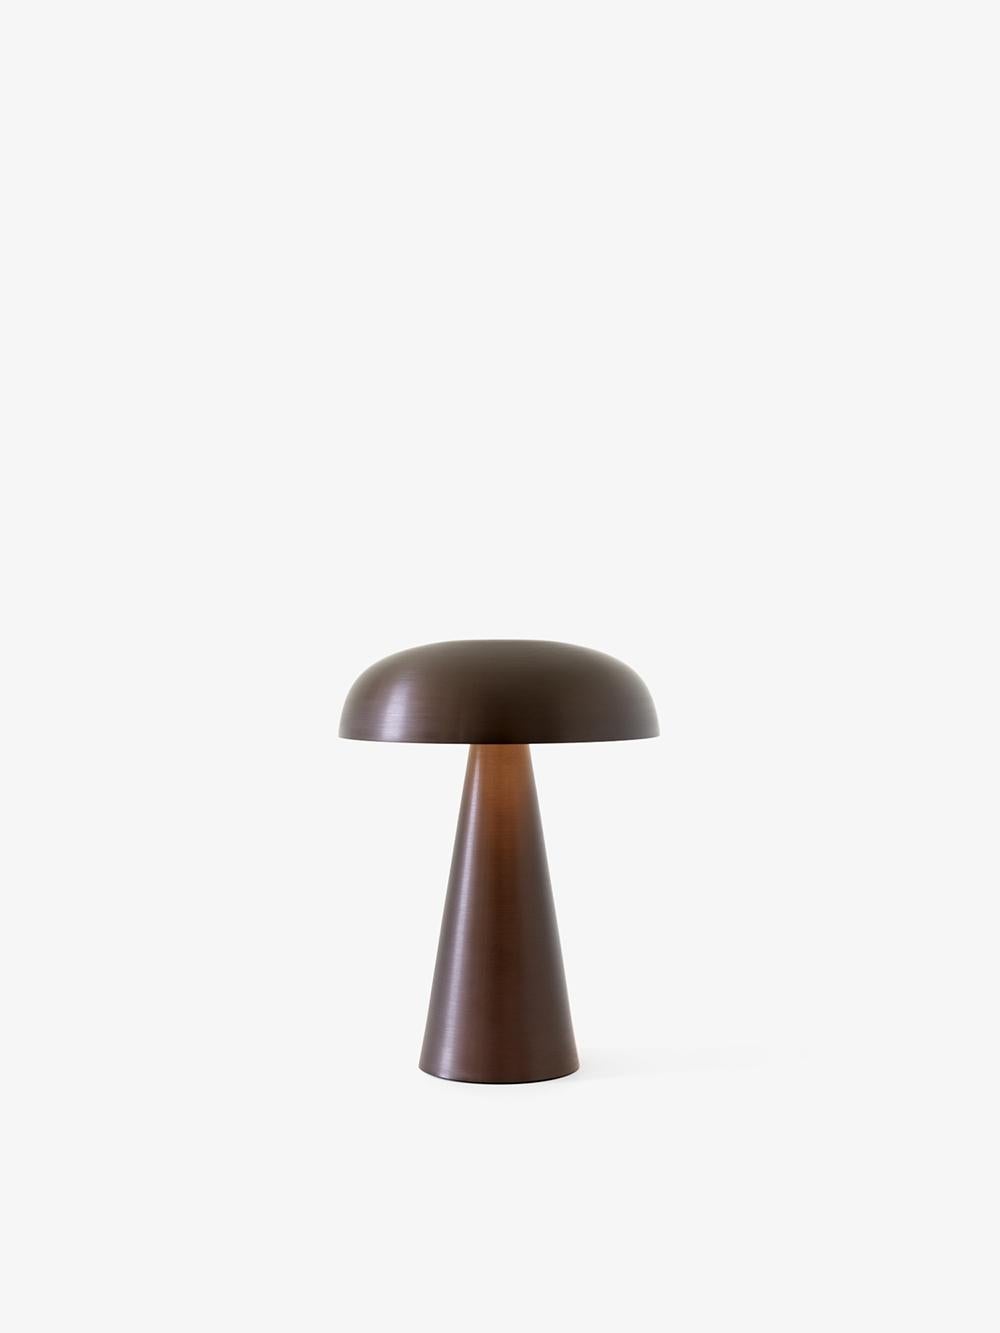 Adaptez l'éclairage à votre humeur avec la Como SC53, une lampe de table portable de Space Copenhagen. 
Fabriquée en aluminium anodisé, la base robuste de Como s'effile vers un abat-jour en forme de champignon aux courbes douces. 
Cette lampe à